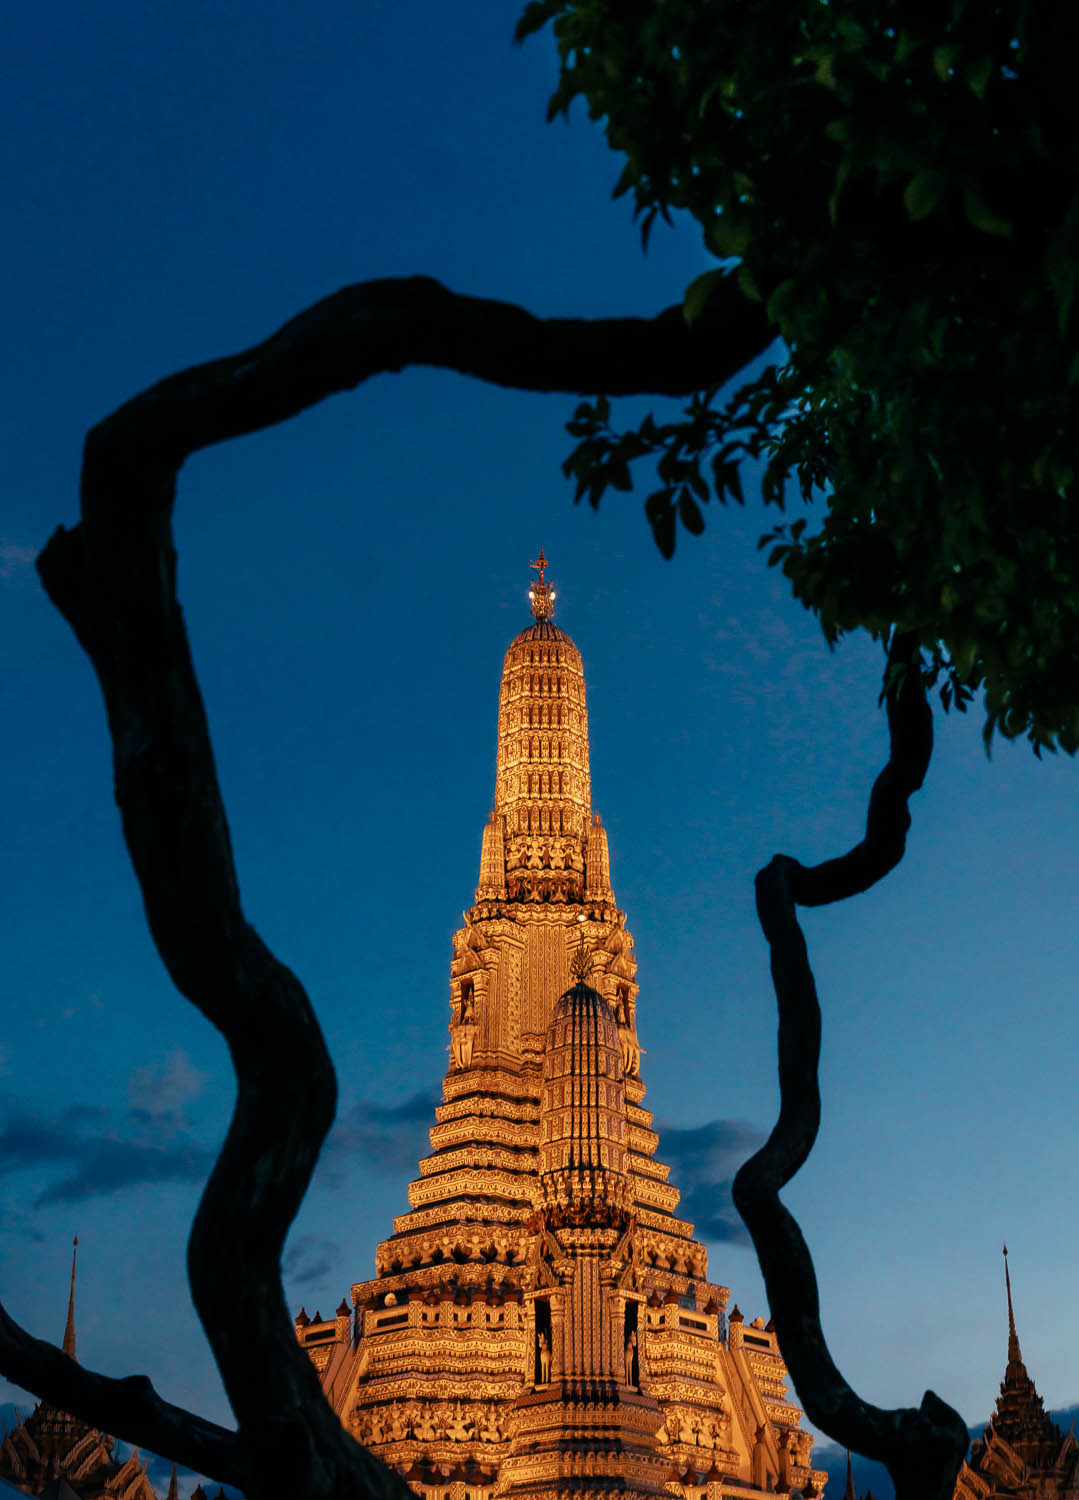 Wat Arun at night, Bangkok, Thailand